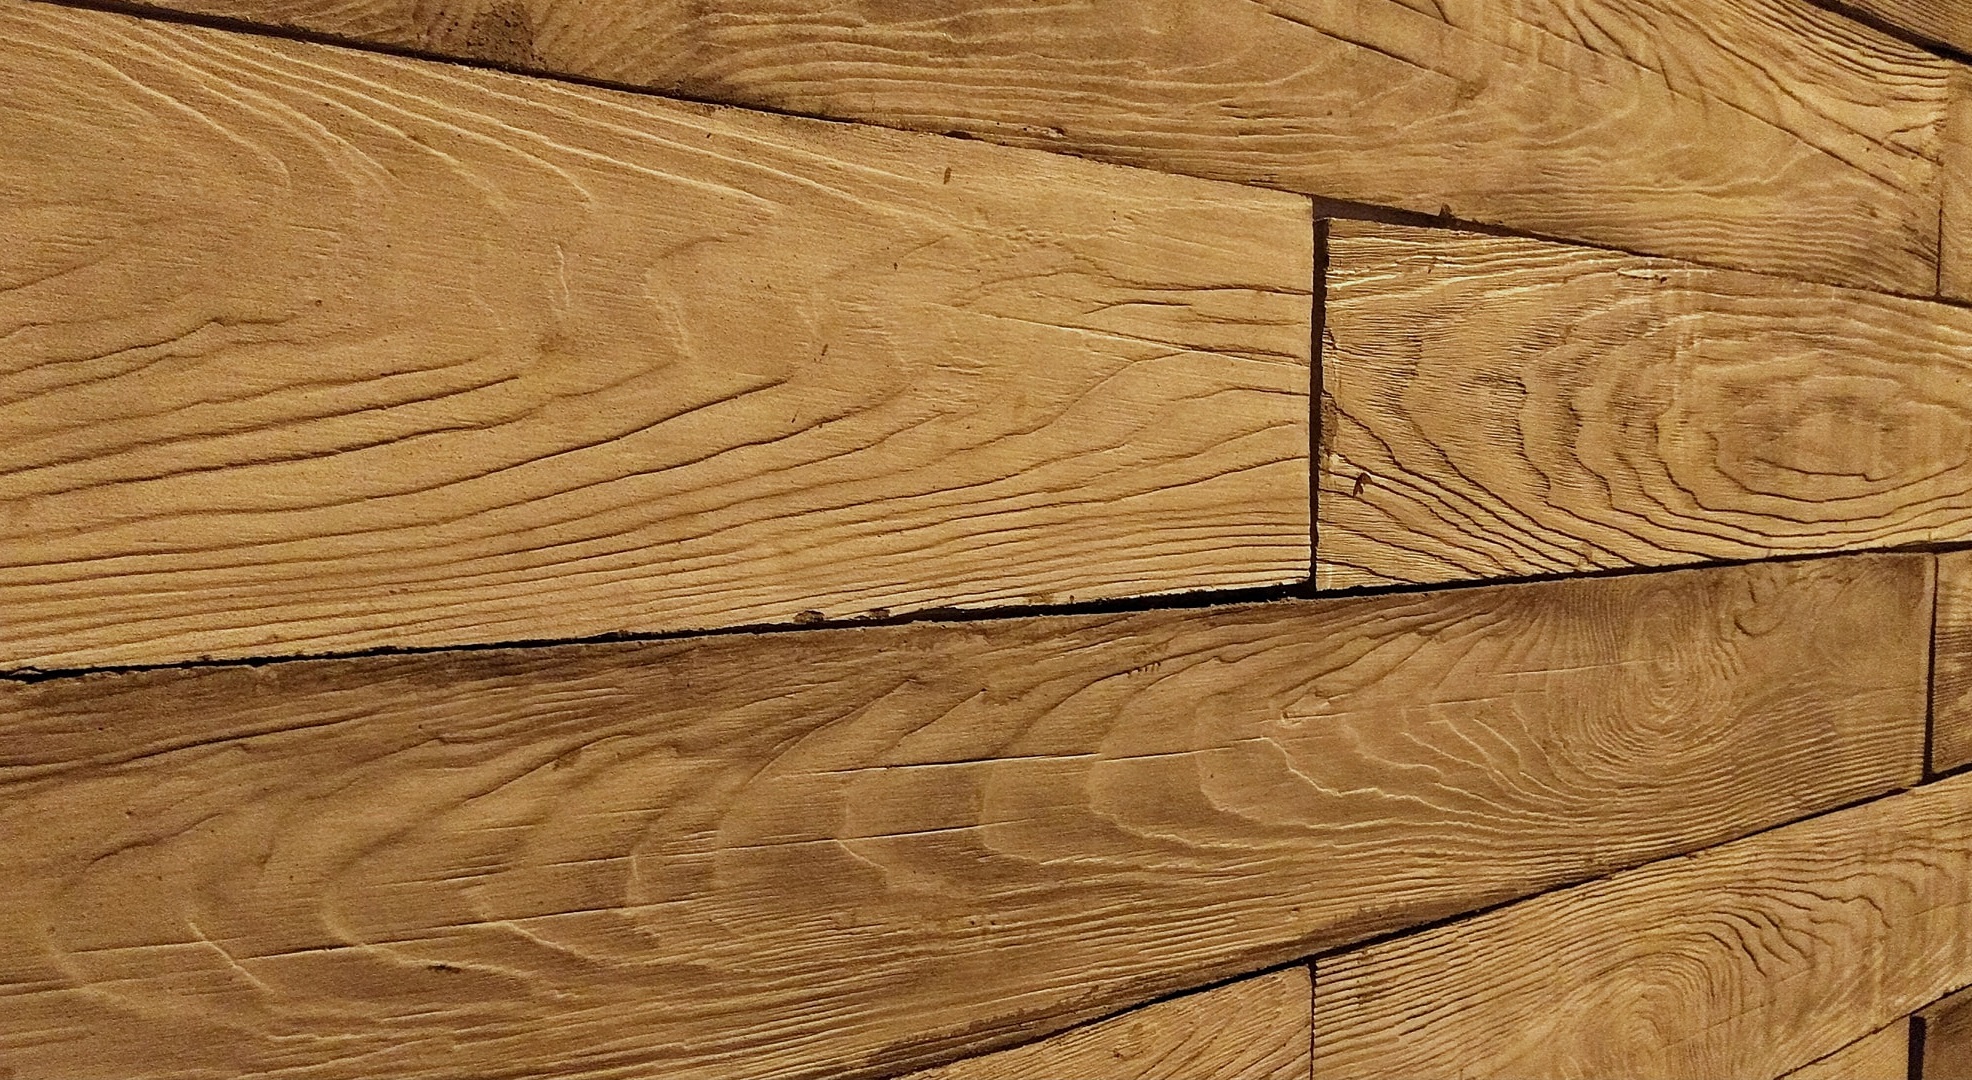 Bề mặt gạch vân gỗ với đường vân rõ nét.